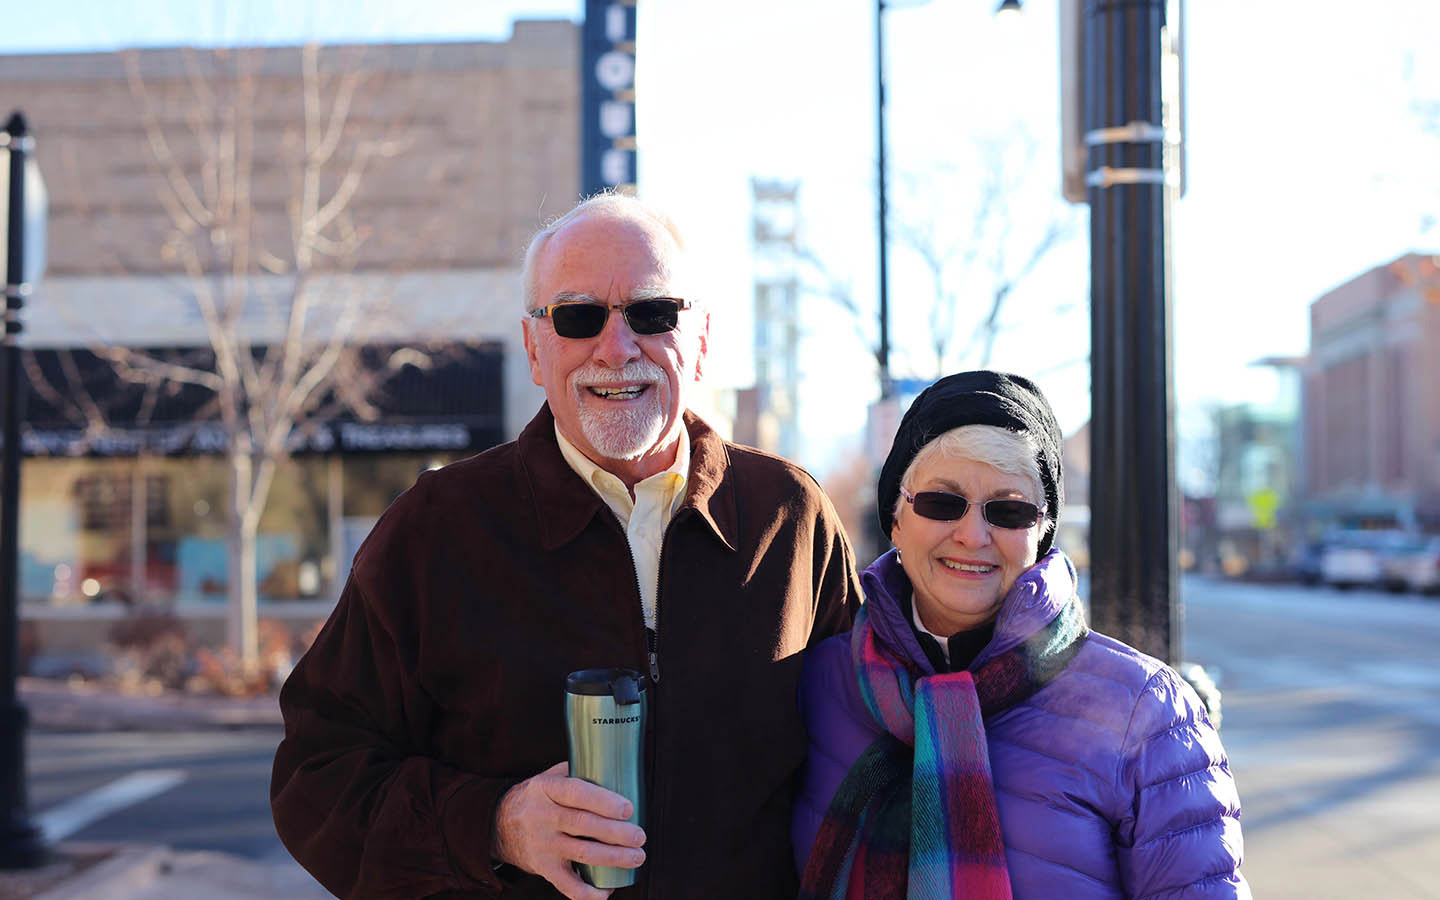 Cochlear-användaren Tom och hans fru Brenda poserar för ett foto på gatan